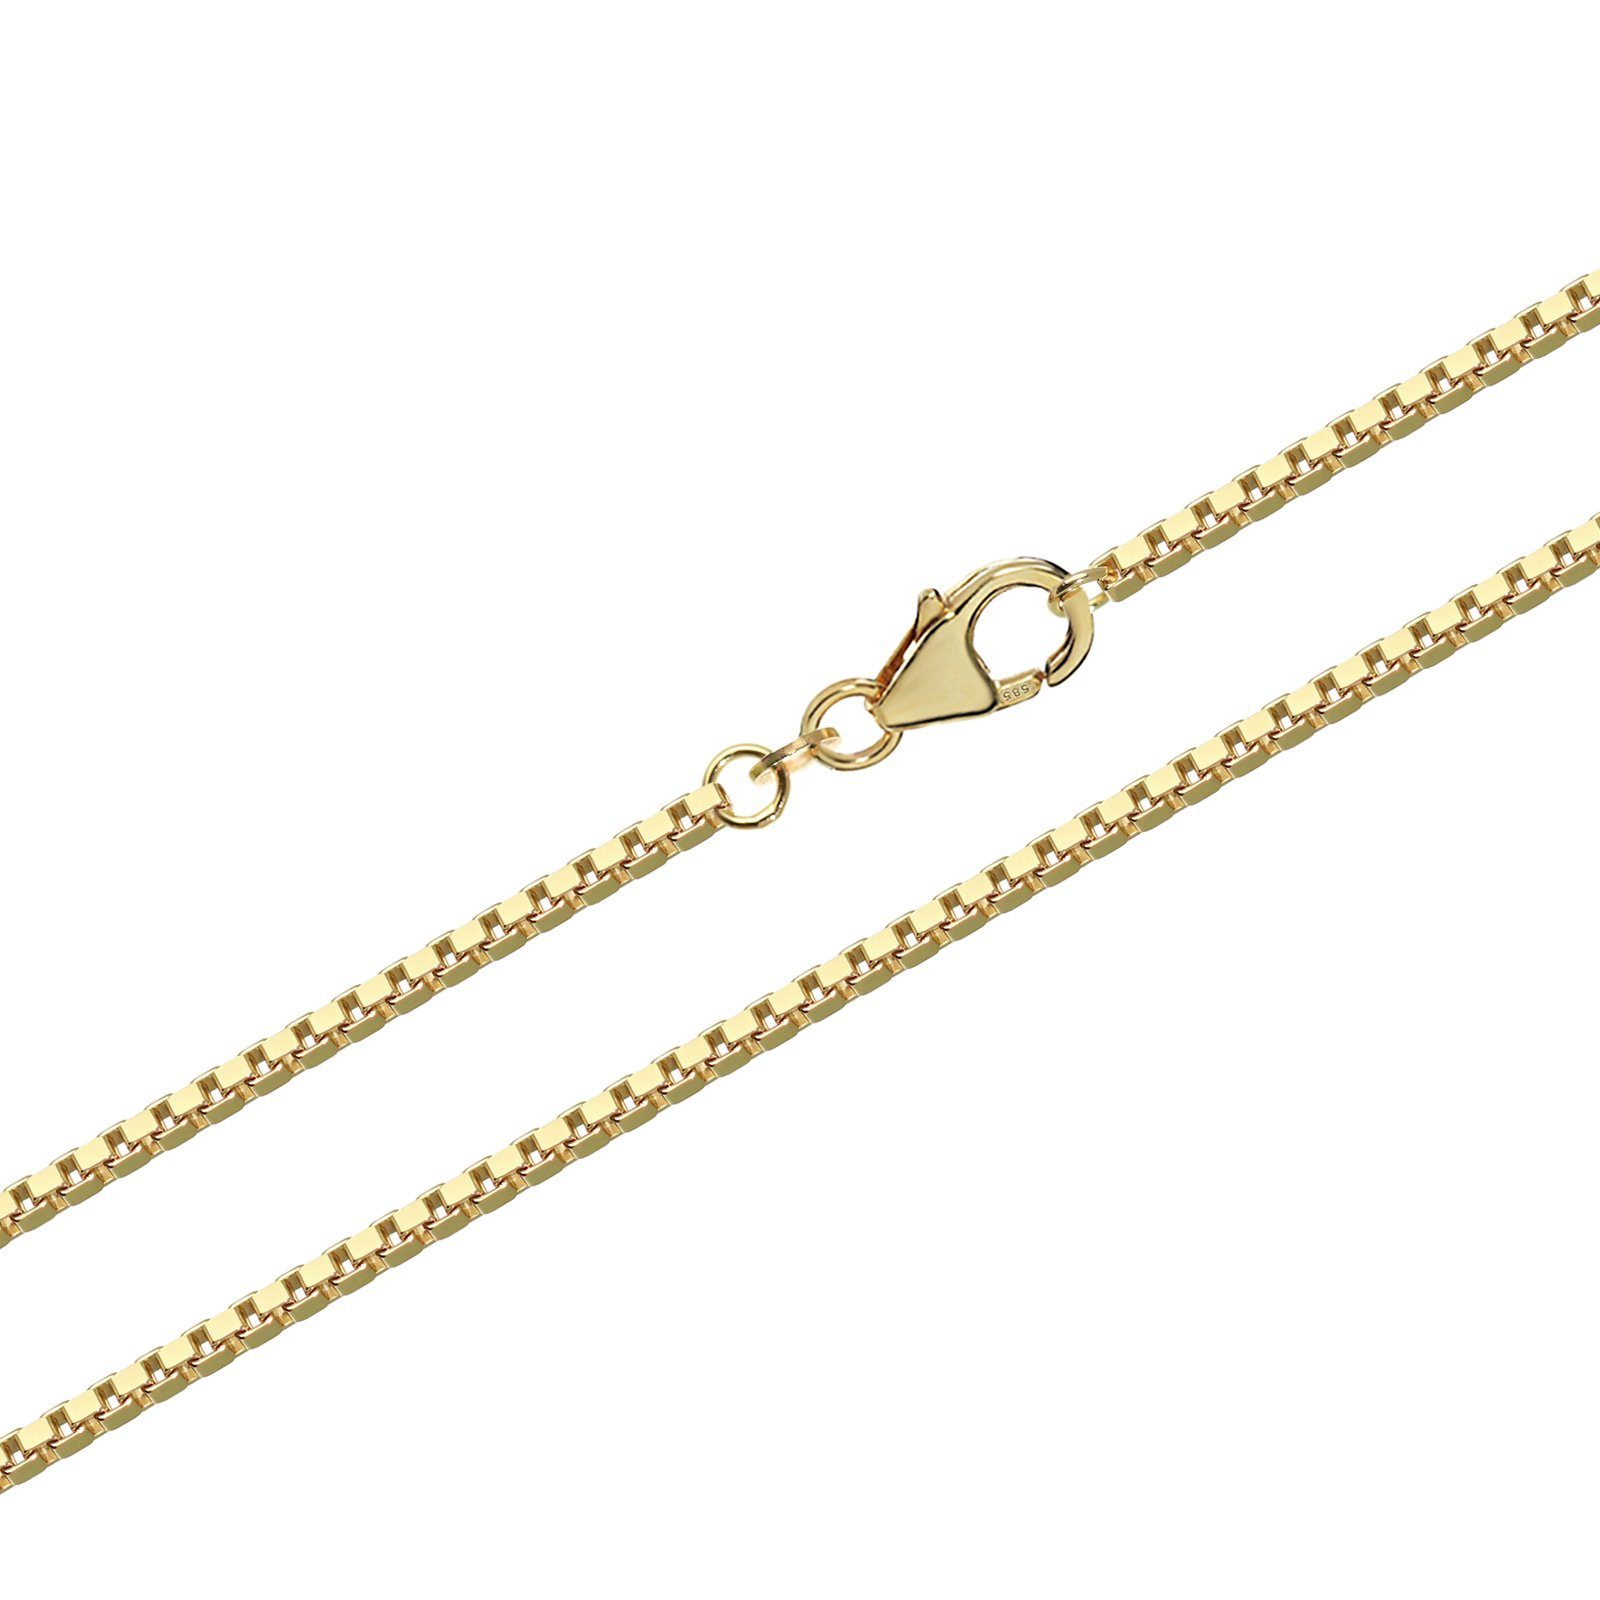 NKlaus Goldkette 60cm Venezia Echte 585 Gelbgold 14 Karat Veneziane, Halskette füt Kettenanhänger | Ketten ohne Anhänger